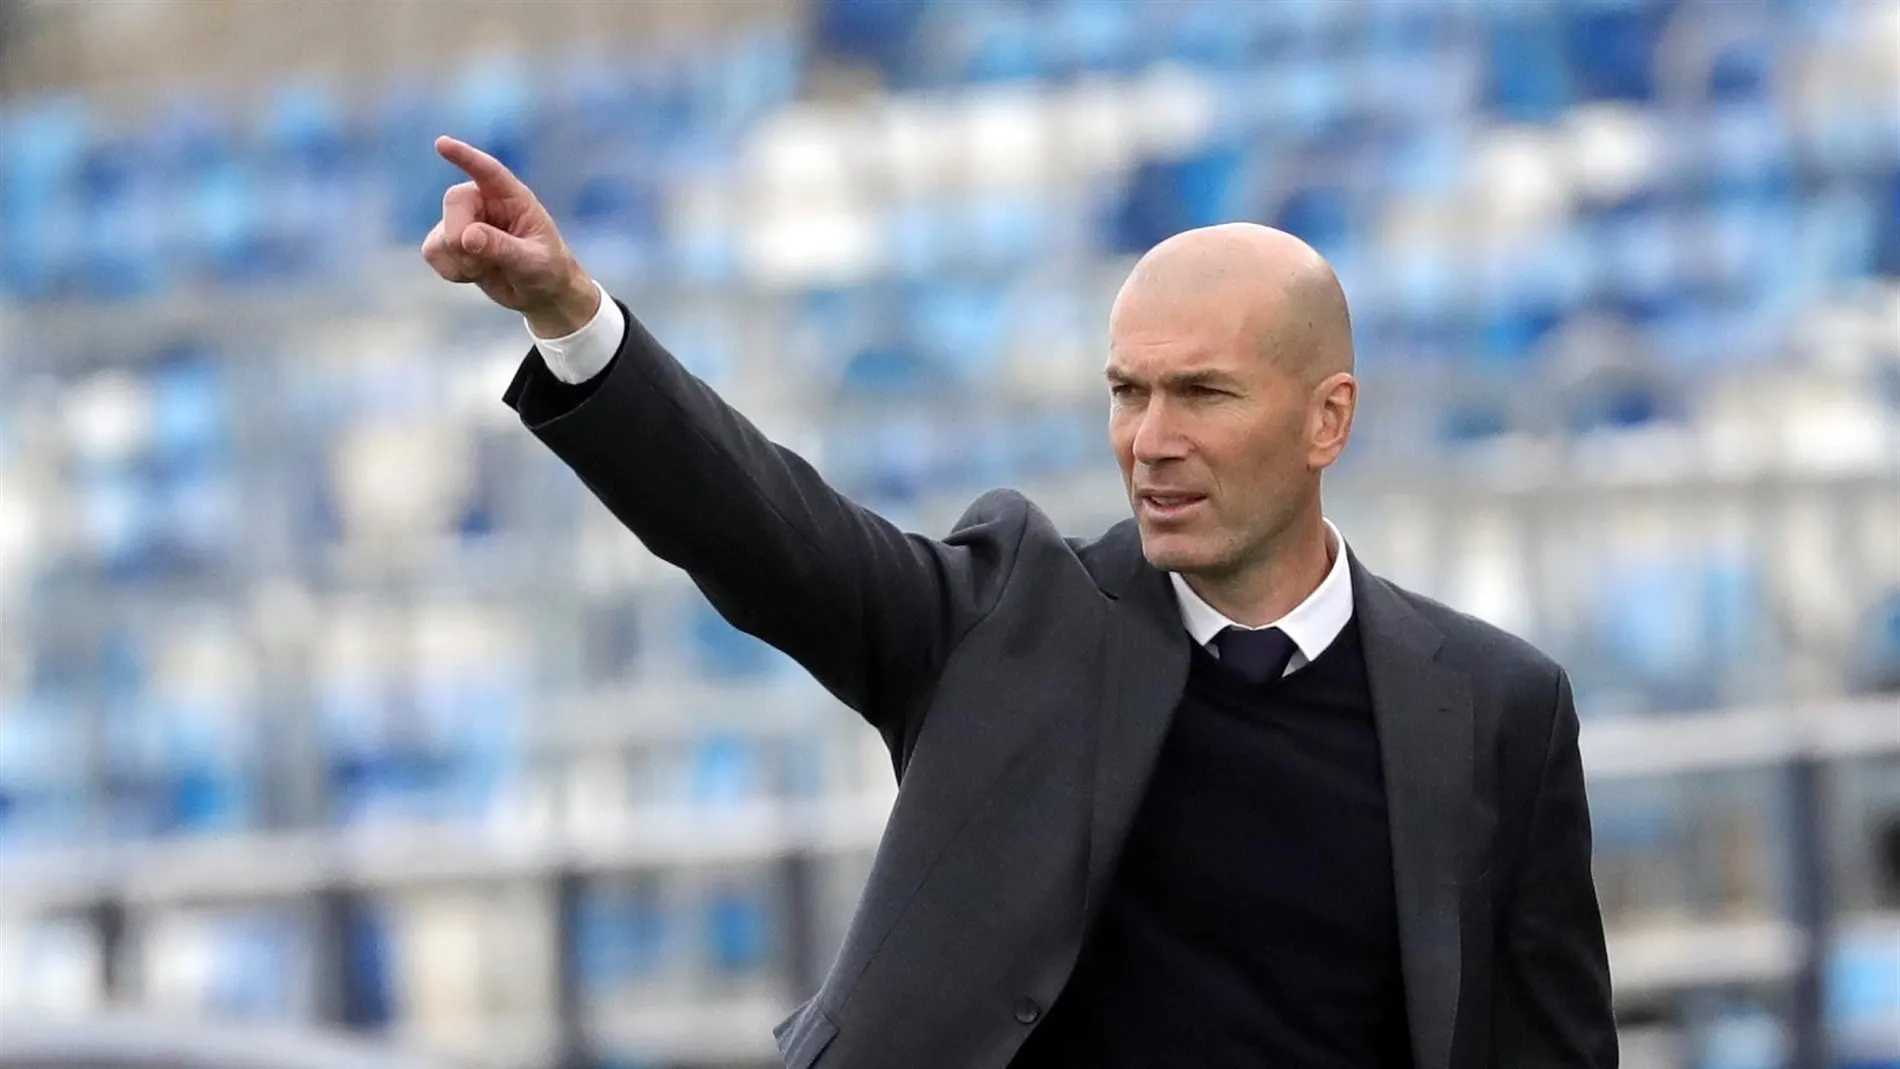 Zidane comunica que deja el Real Madrid